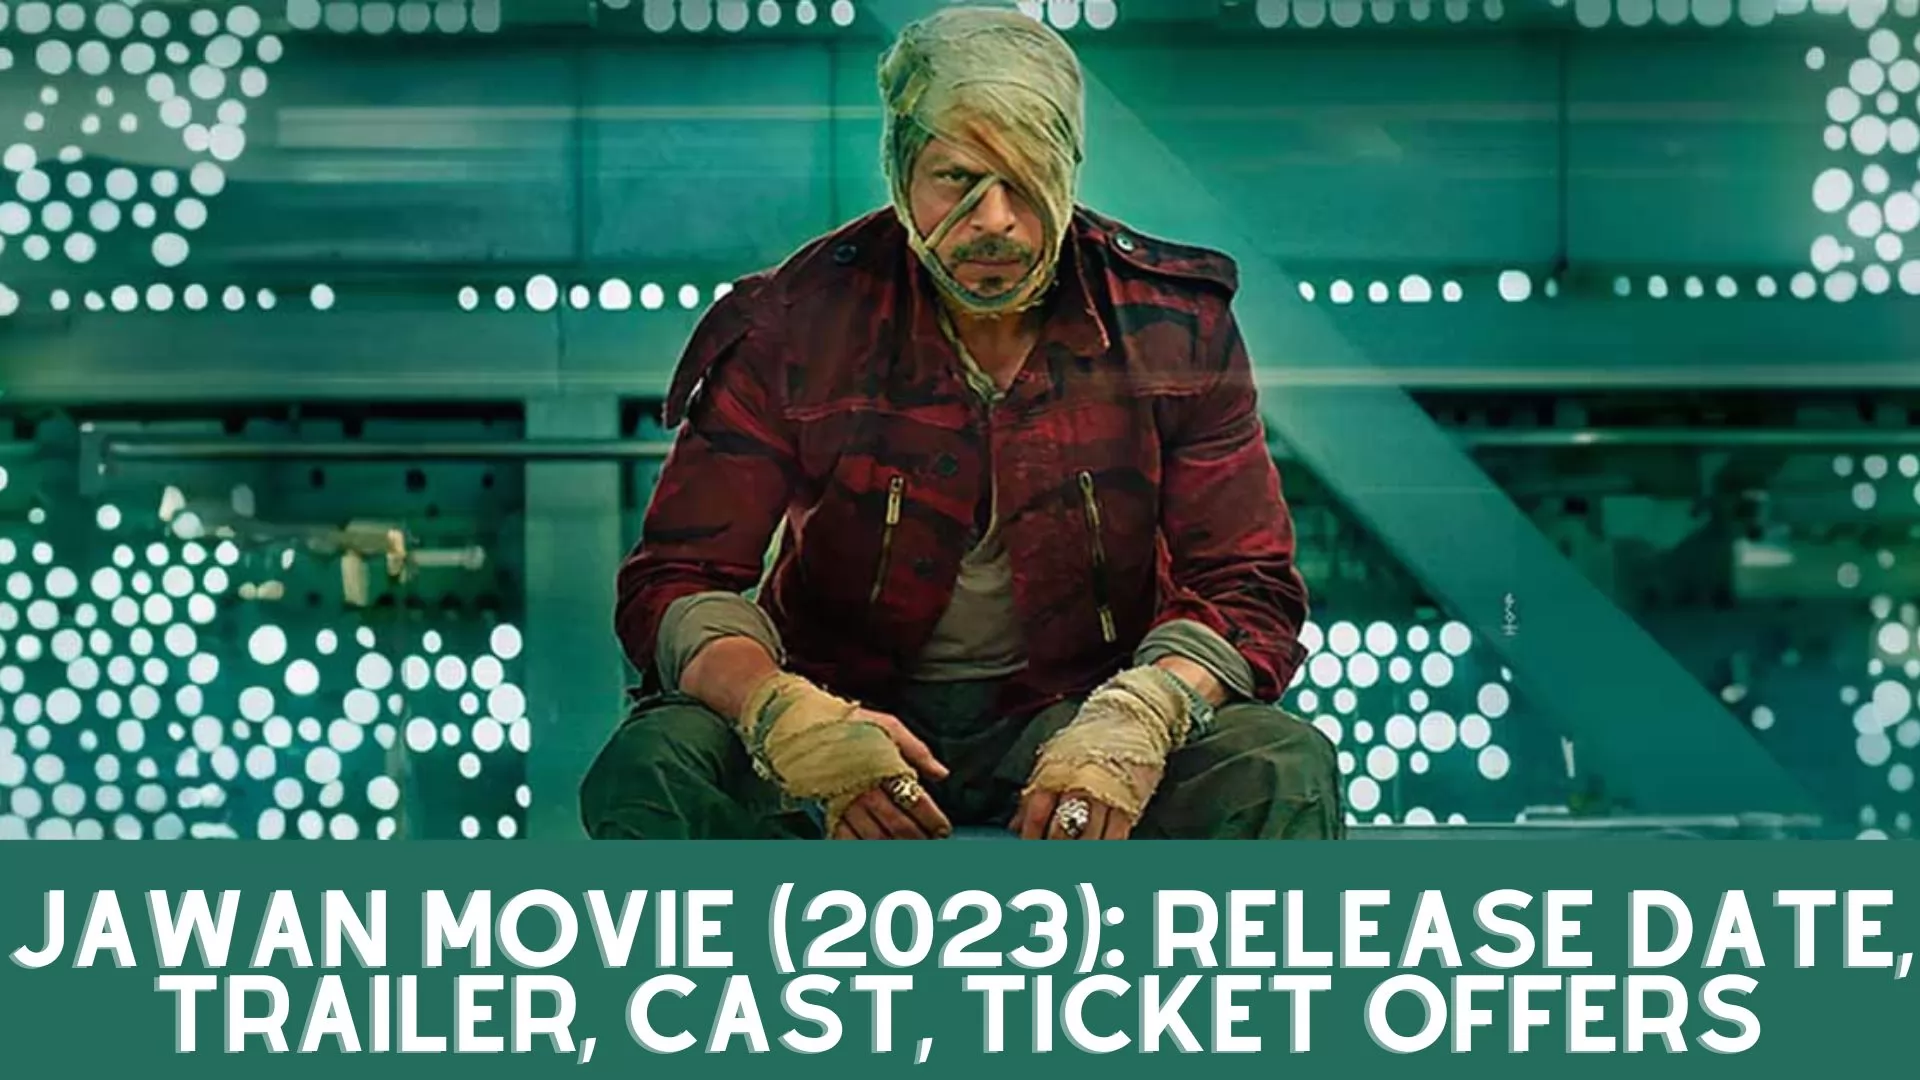 Jawan Movie (2023): Release Date, Trailer, Cast, Ticket Offers